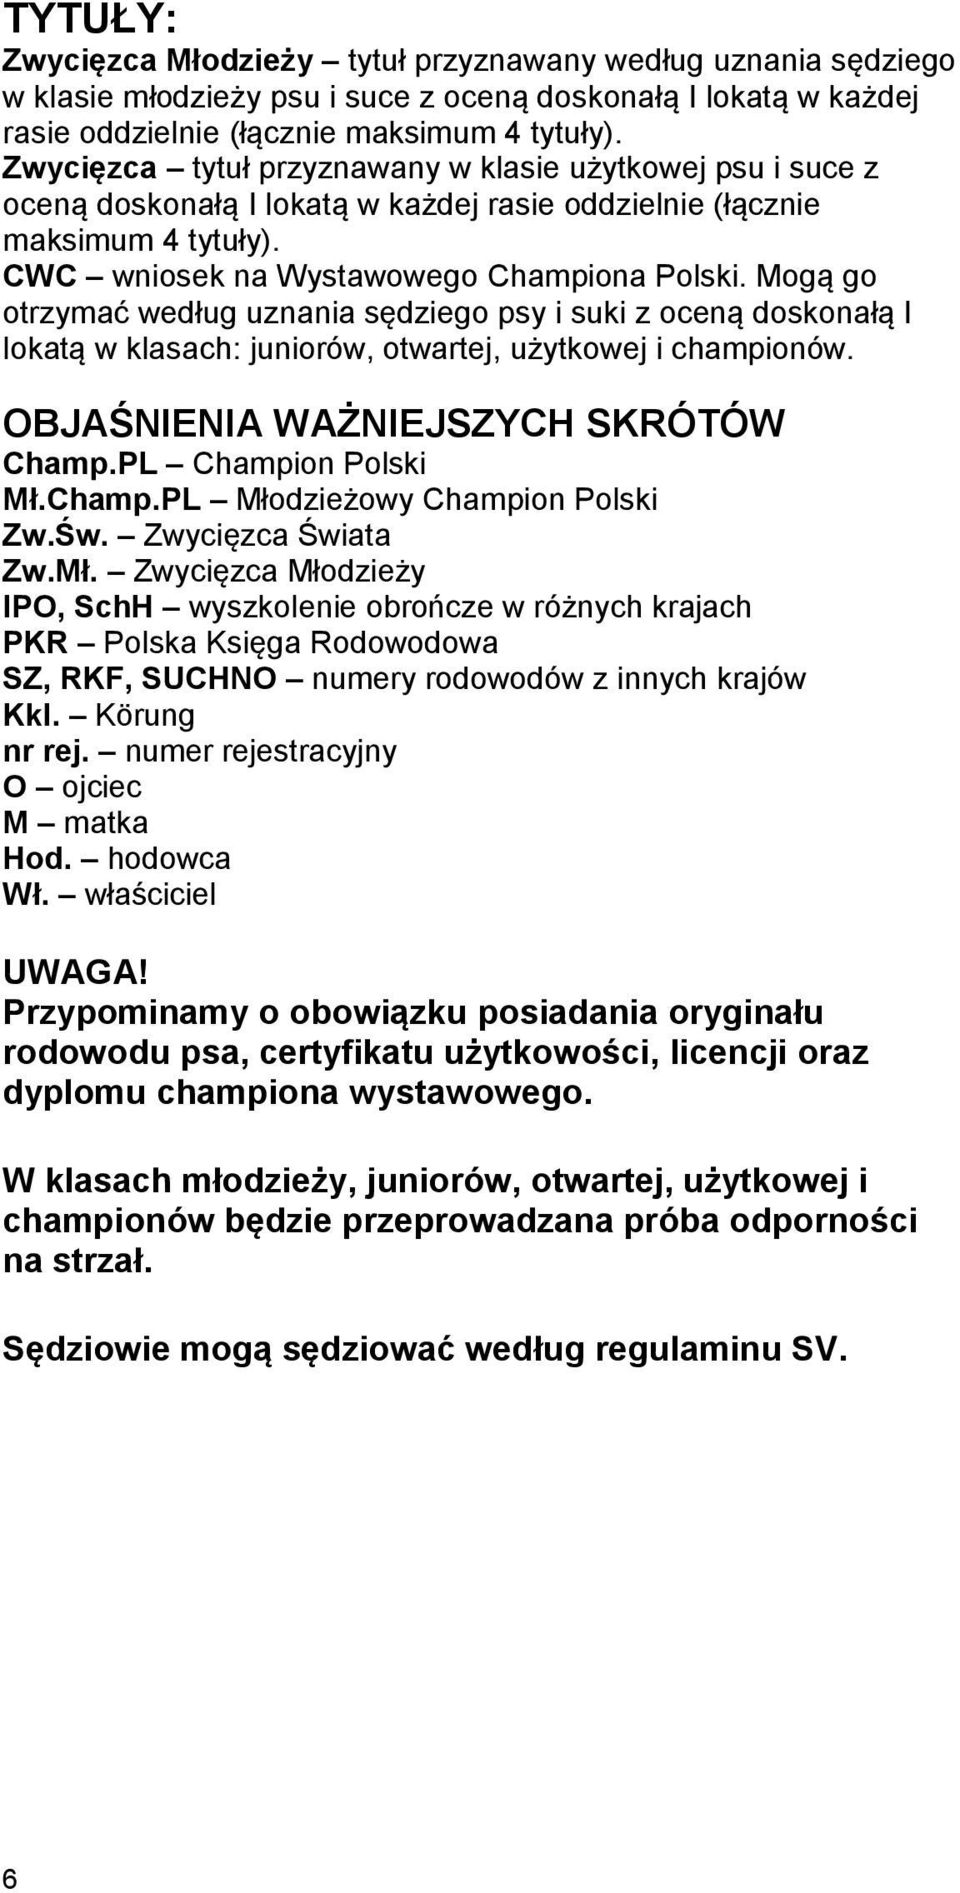 Mogą go otrzymać według uznania sędziego psy i suki z oceną doskonałą I lokatą w klasach: juniorów, otwartej, użytkowej i championów. OBJAŚNIENIA WAŻNIEJSZYCH SKRÓTÓW Champ.PL Champion Polski Mł.